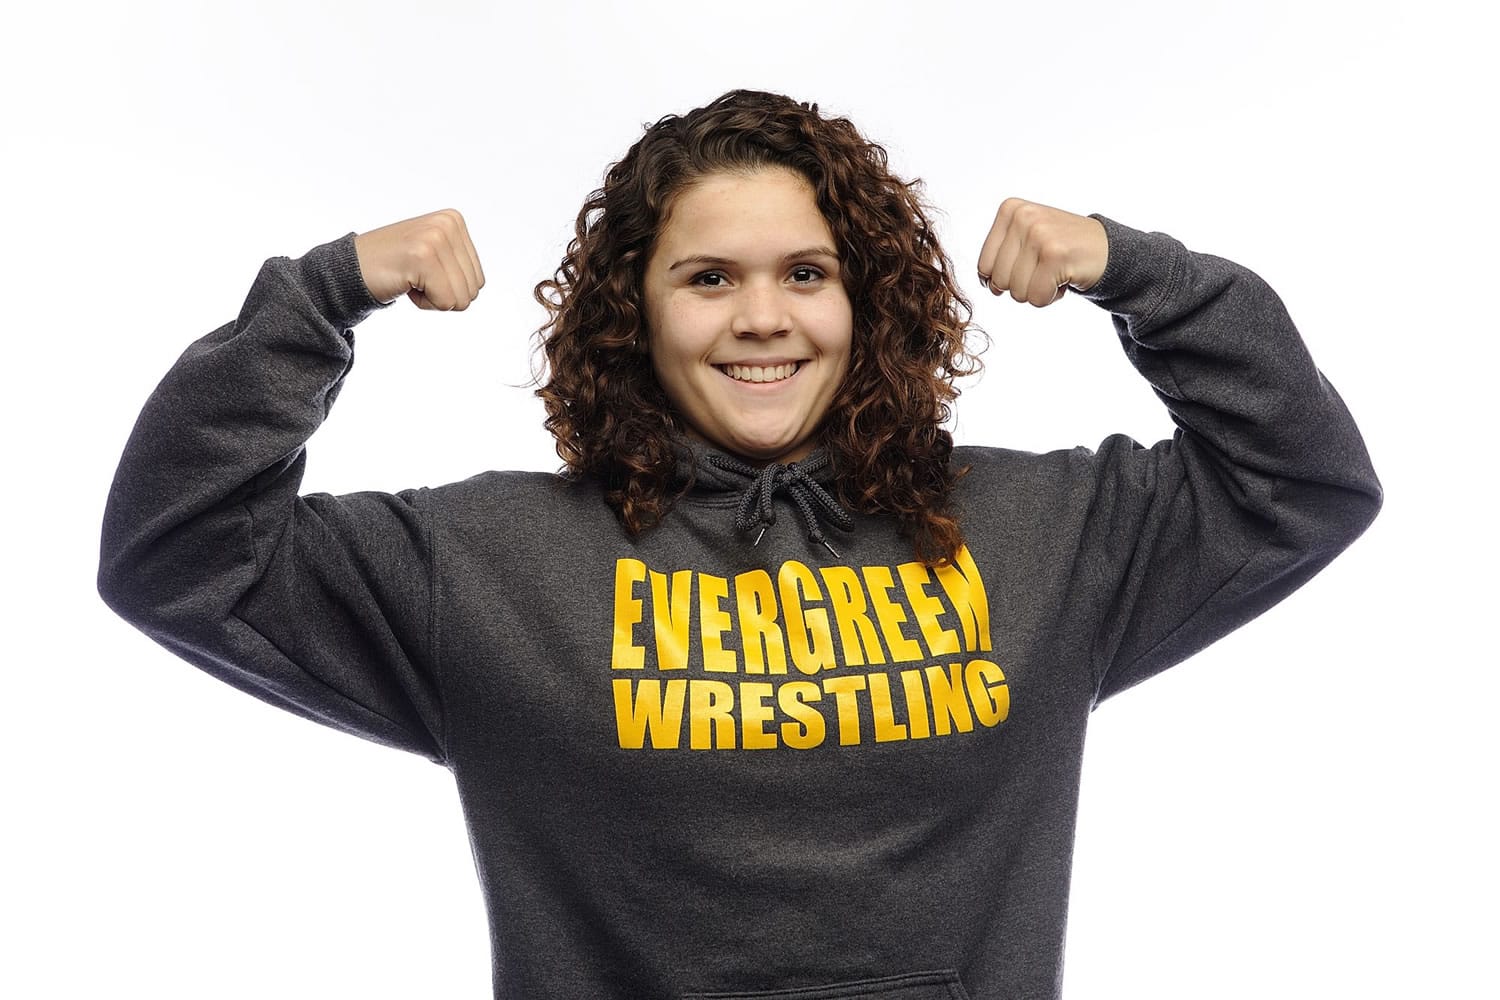 Stephanie Simon
Evergreen wrestling